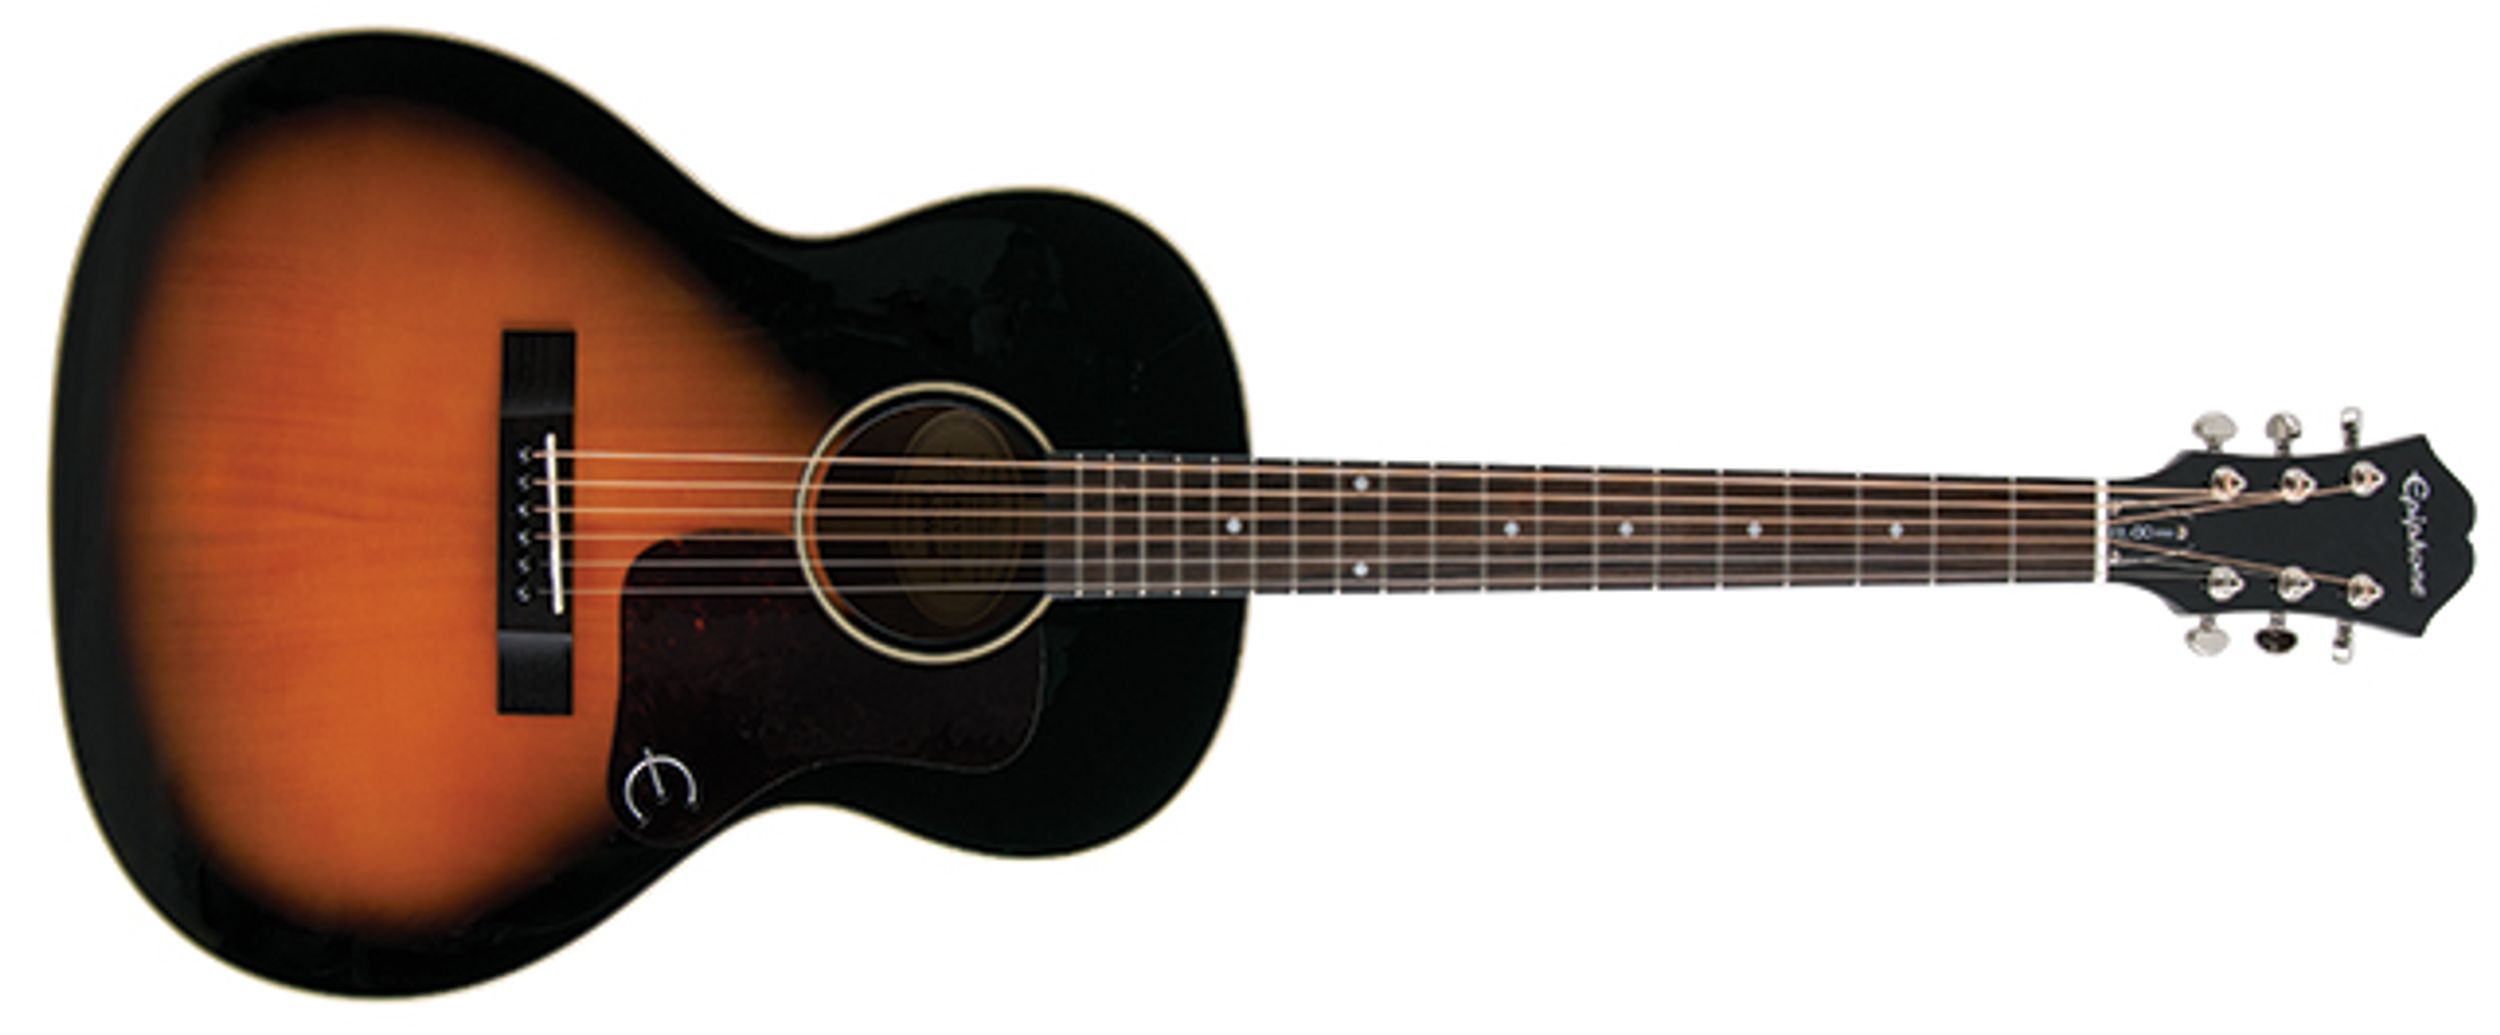 Epiphone EL-00 Pro Acoustic Guitar Review